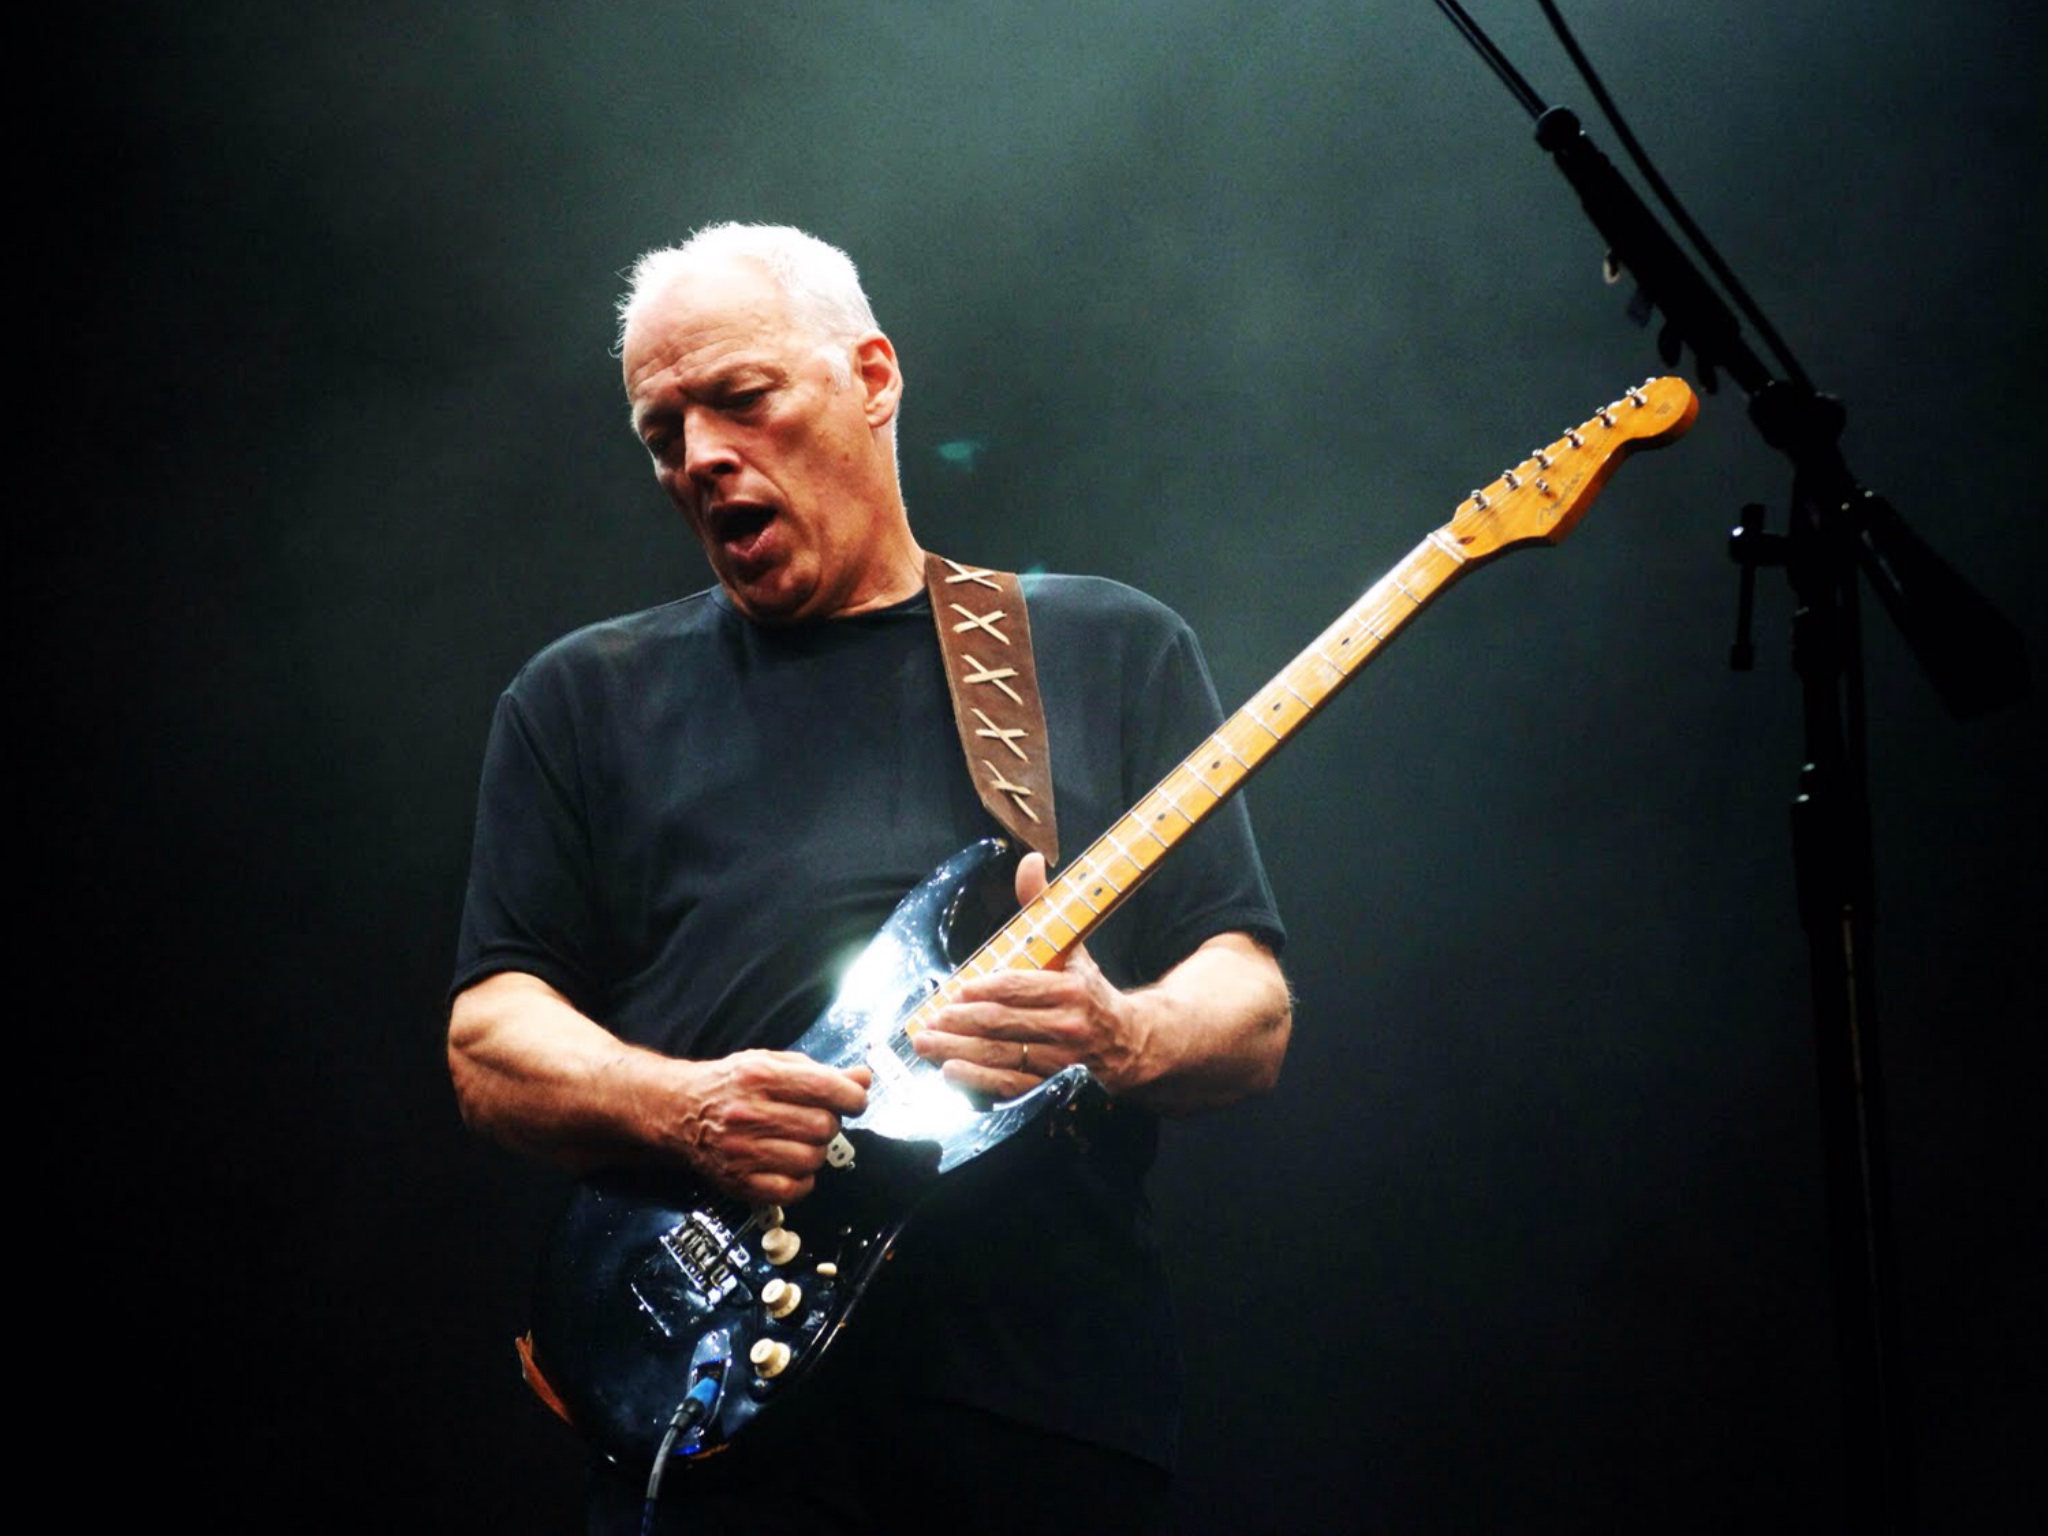 Melhores papéis de parede de David Gilmour para tela do telefone